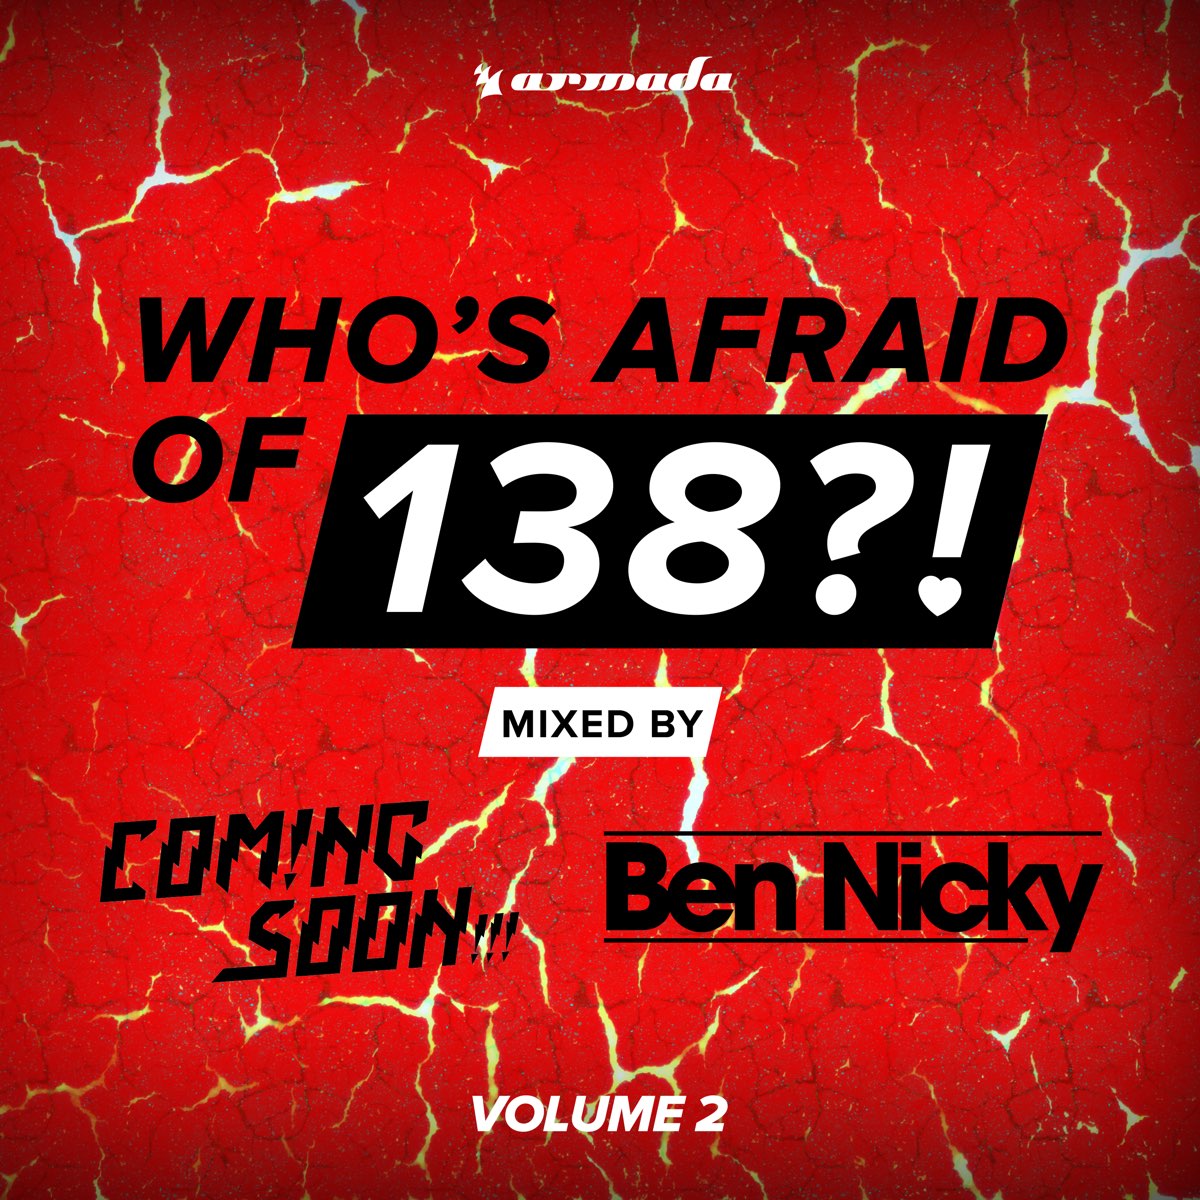 Who s afraid of detroit. Who's afraid of 138. Alex m.o.r.p.h. feat. Ana criado - Sunset Boulevard (Ben Nicky Remix). Who s afraid песня.